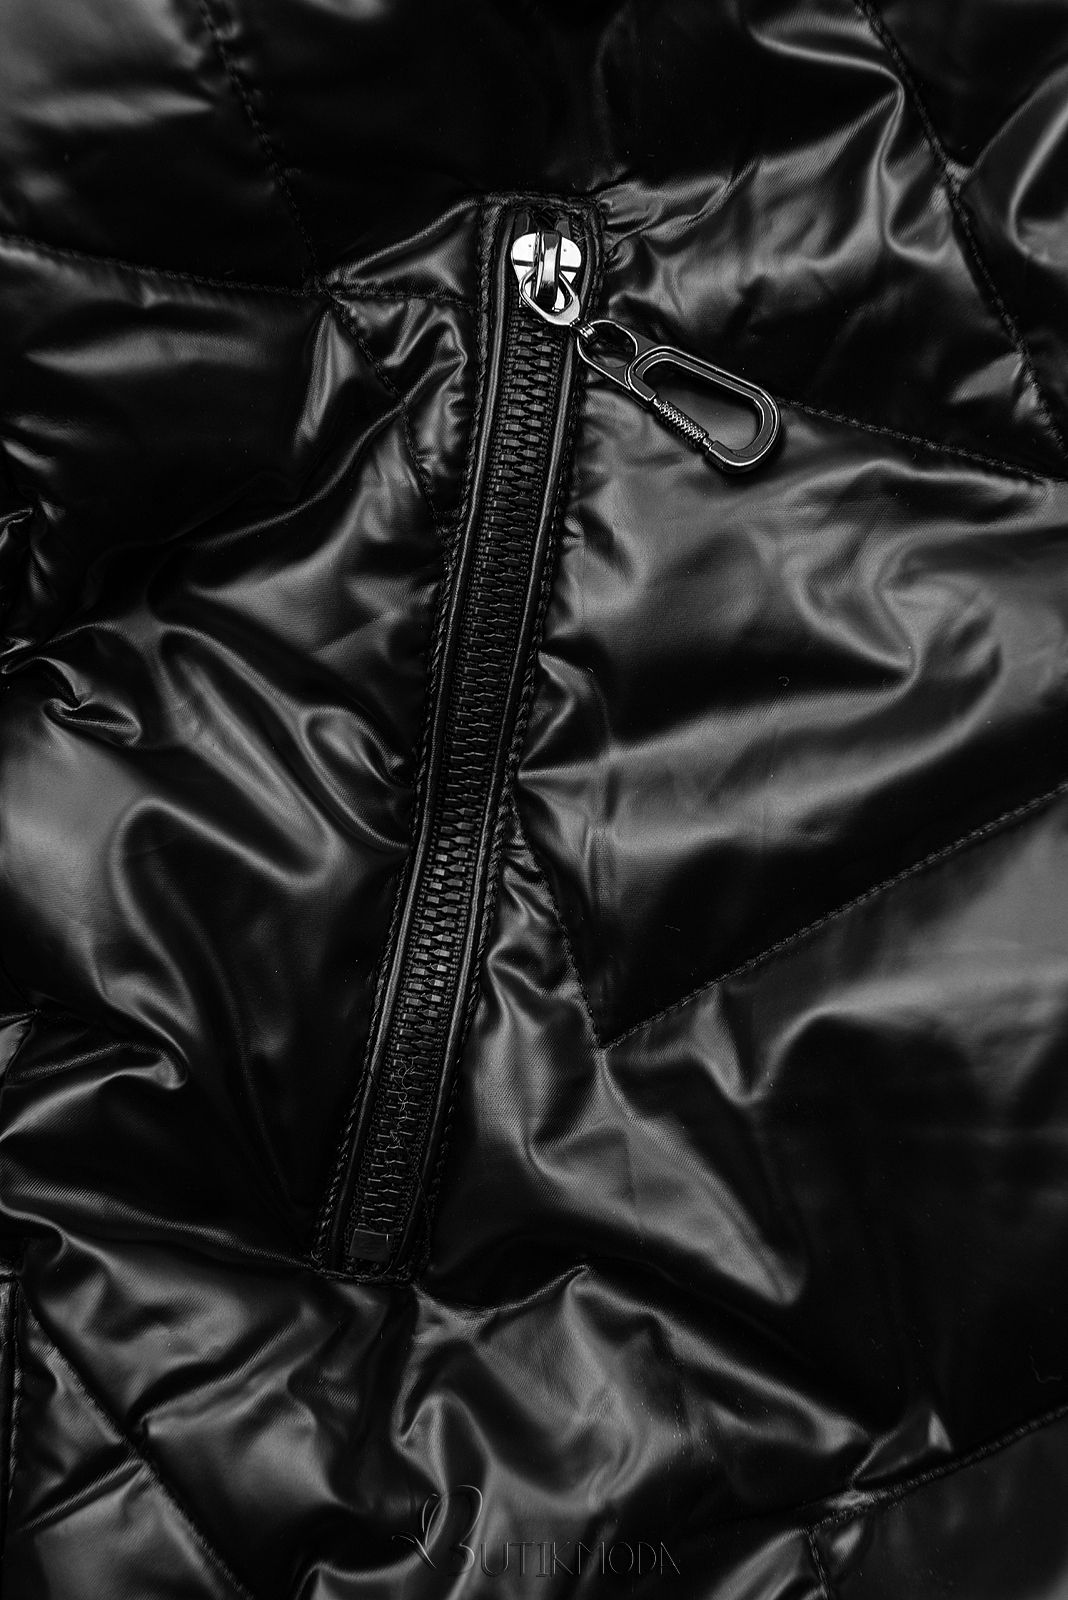 Fekete színű fényes téli kabát